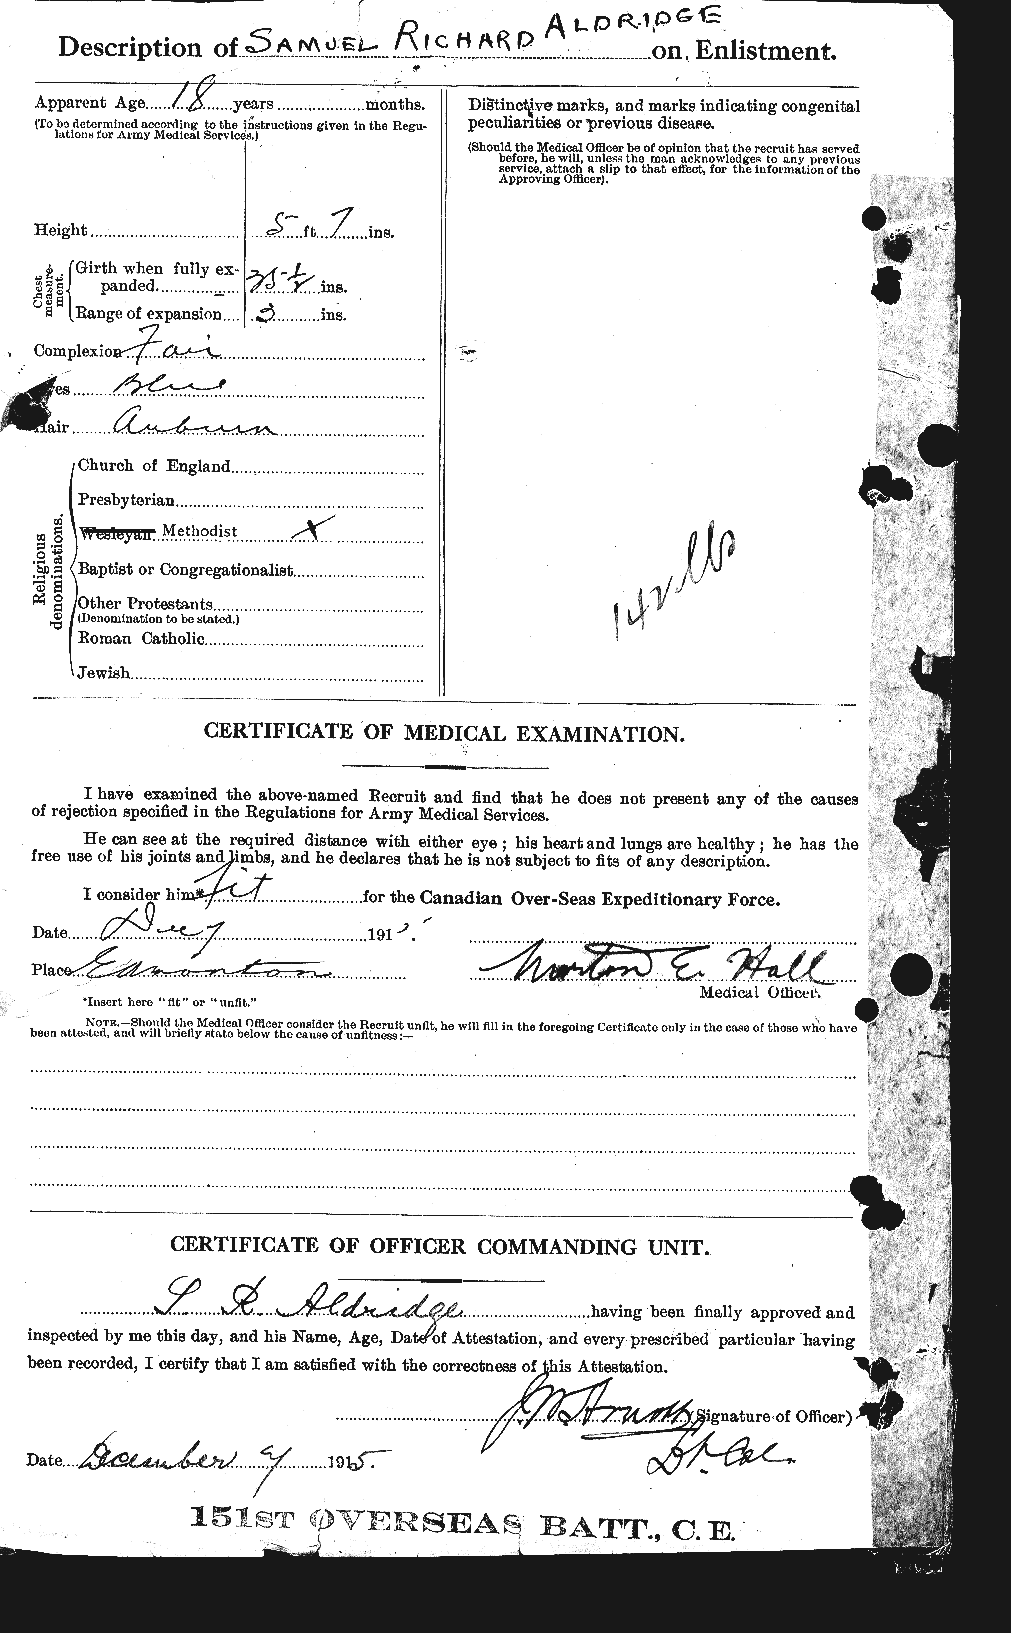 Dossiers du Personnel de la Première Guerre mondiale - CEC 205378b